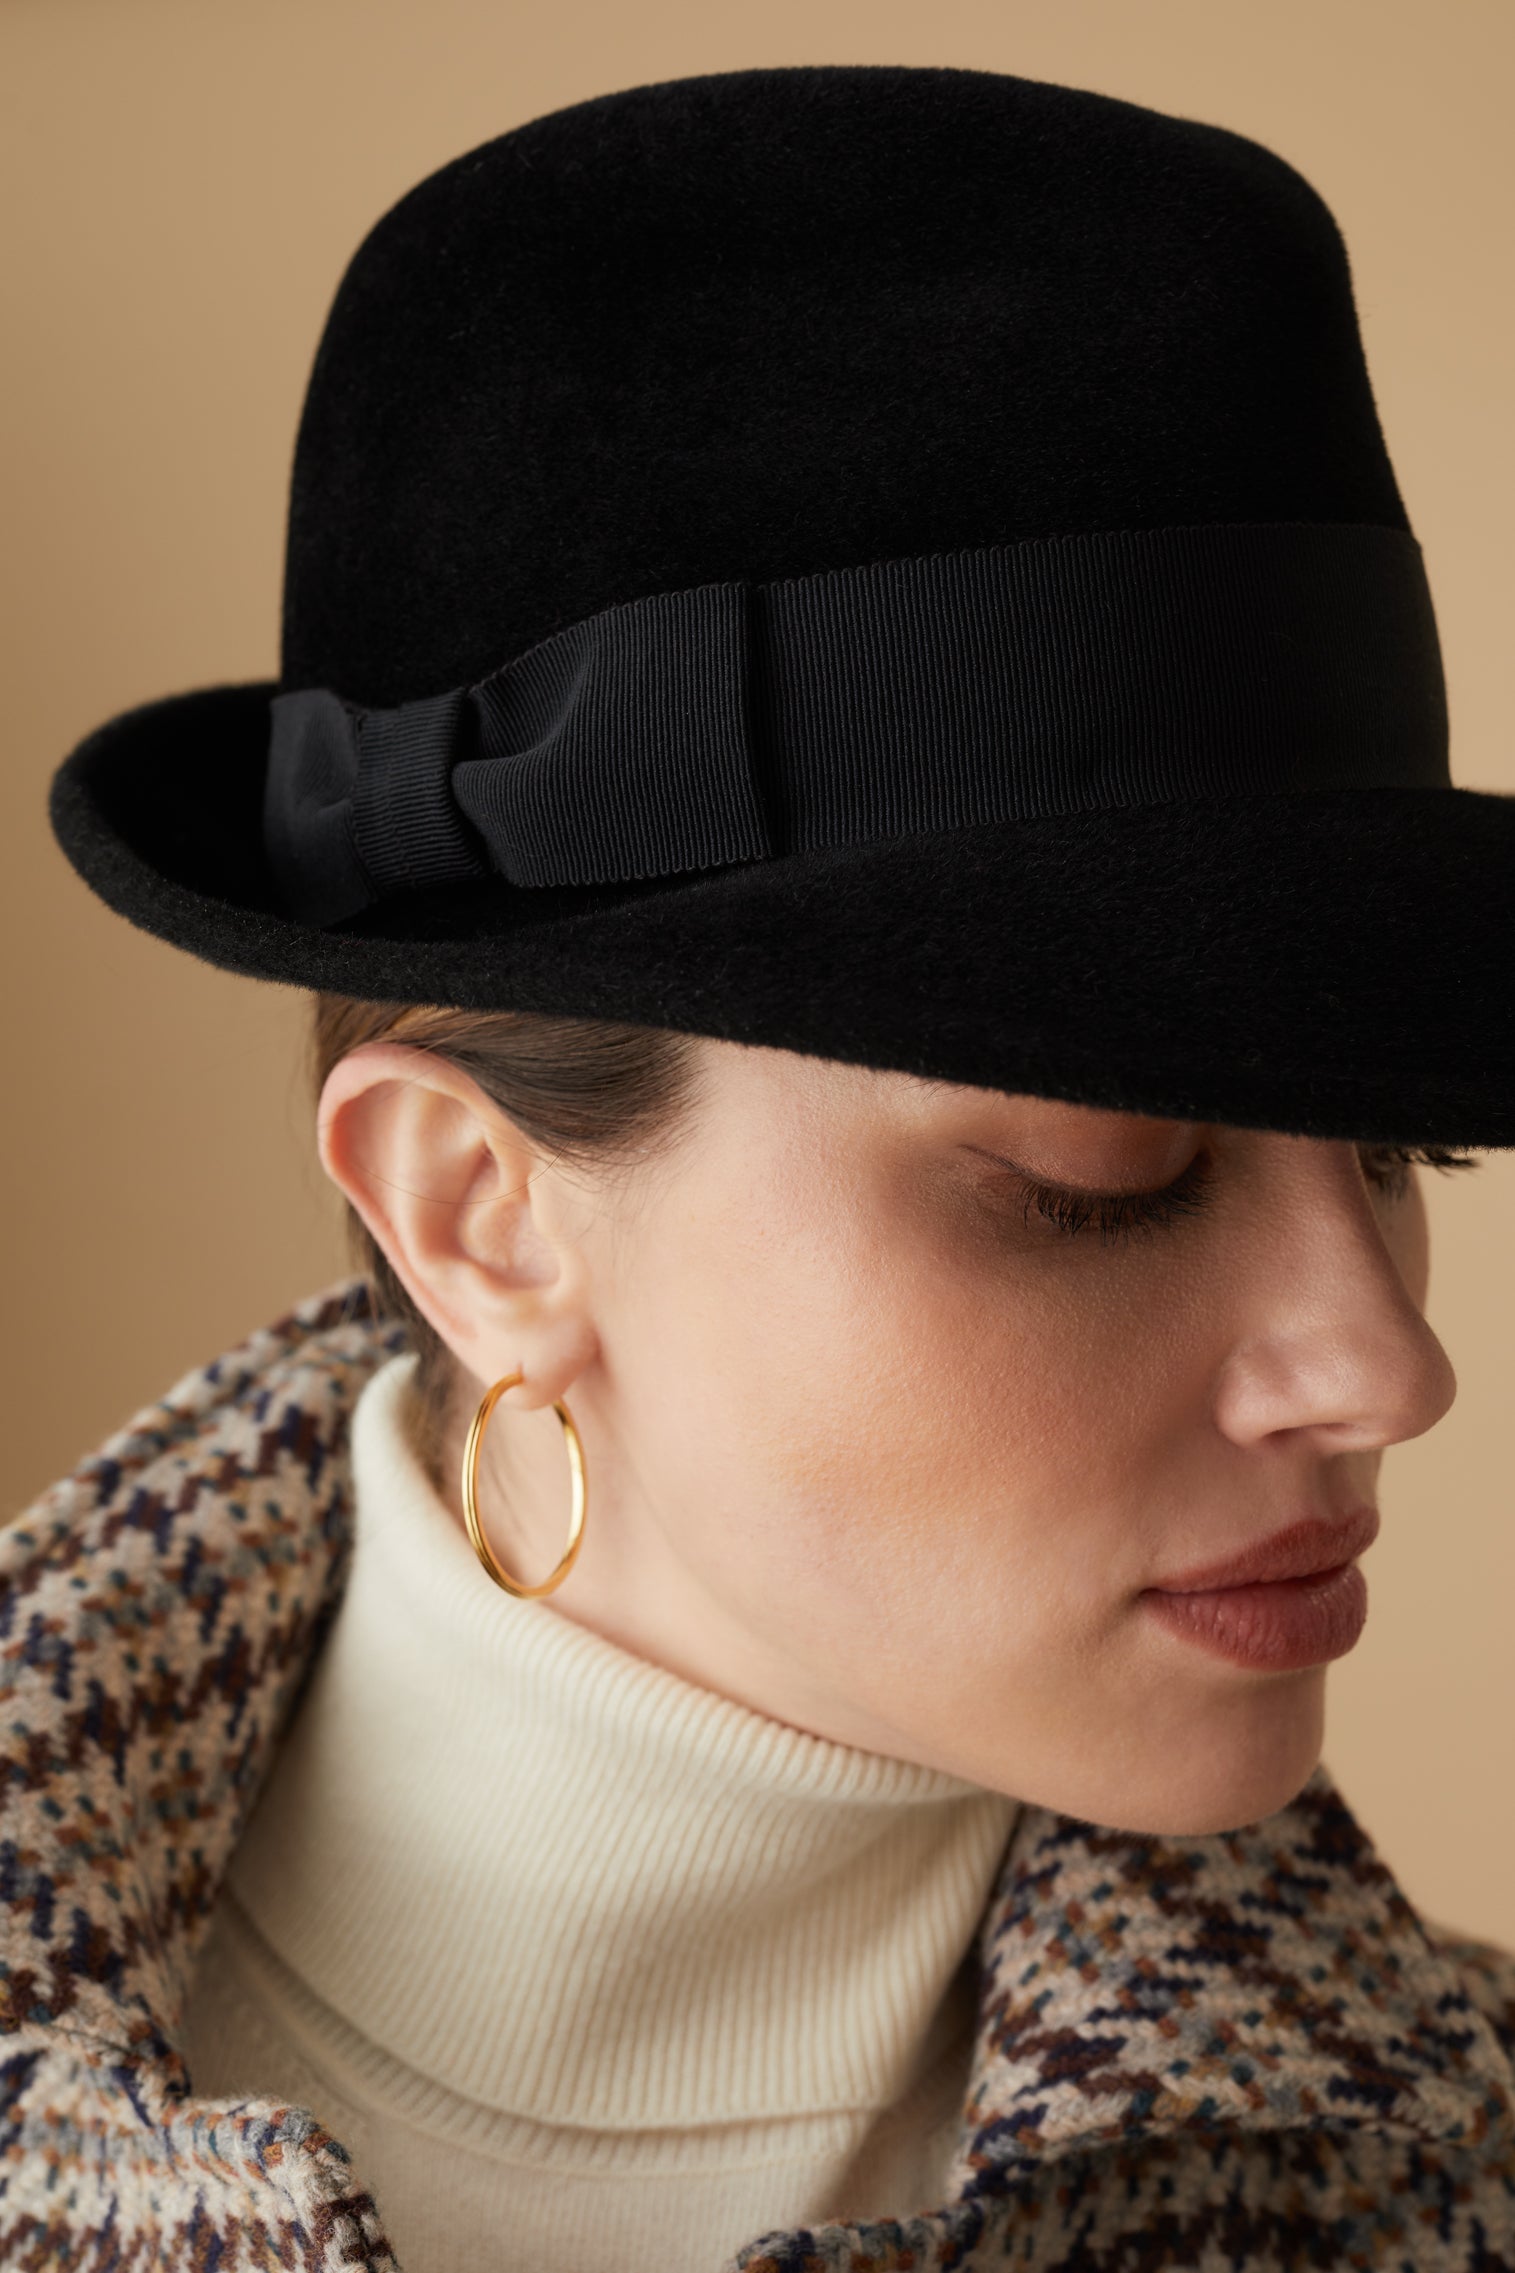 The Vesper - Black Hats & Headpieces for Women - Lock & Co. Hatters London UK